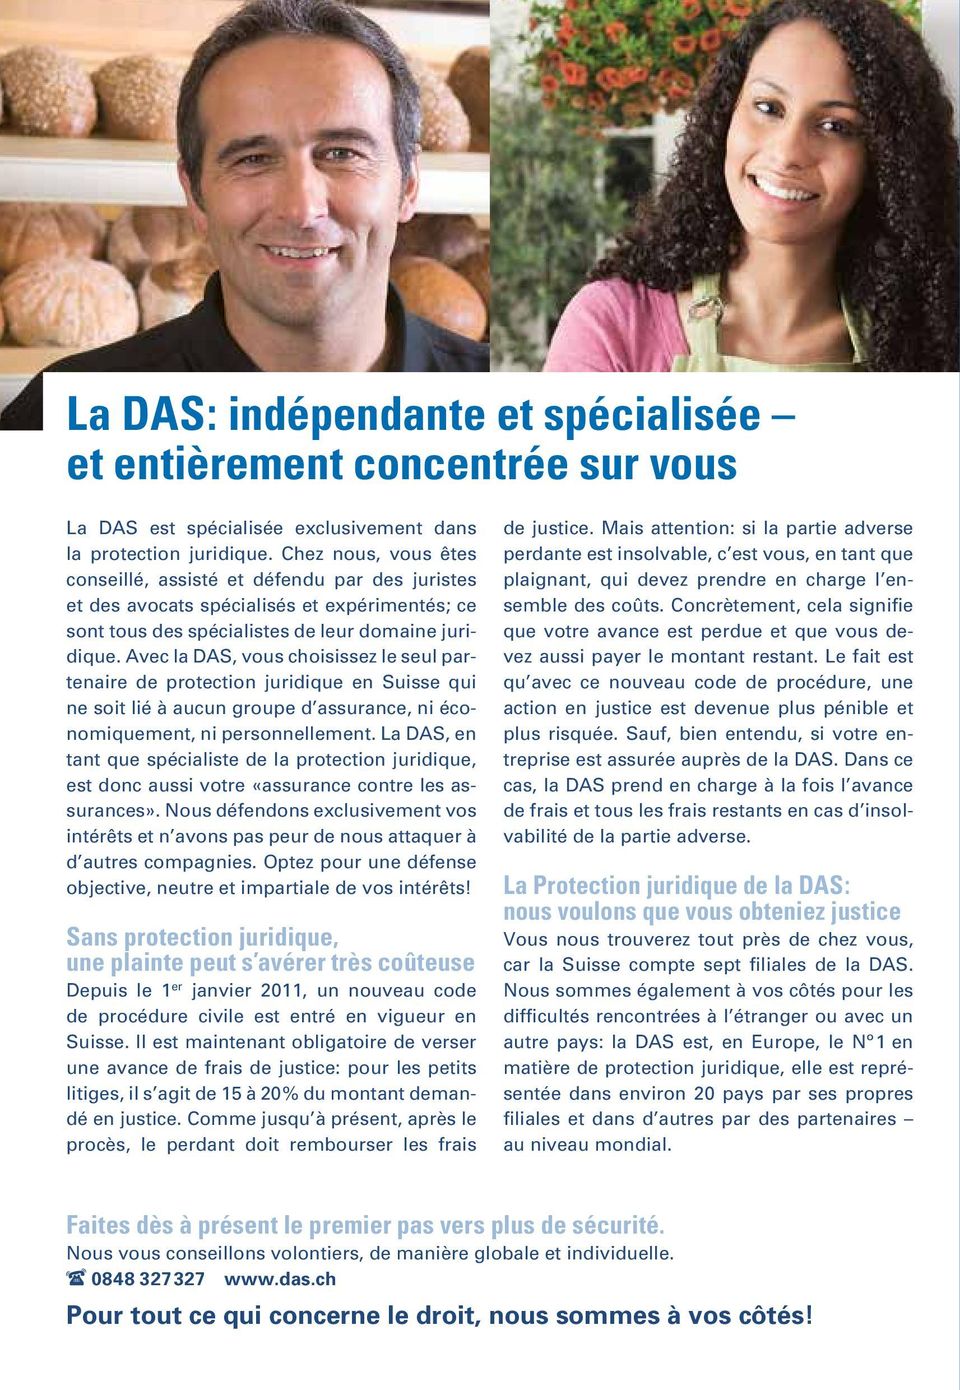 Avec la DAS, vous choisissez le seul partenaire de protection juridique en Suisse qui ne soit lié à aucun groupe d assurance, ni économiquement, ni personnellement.